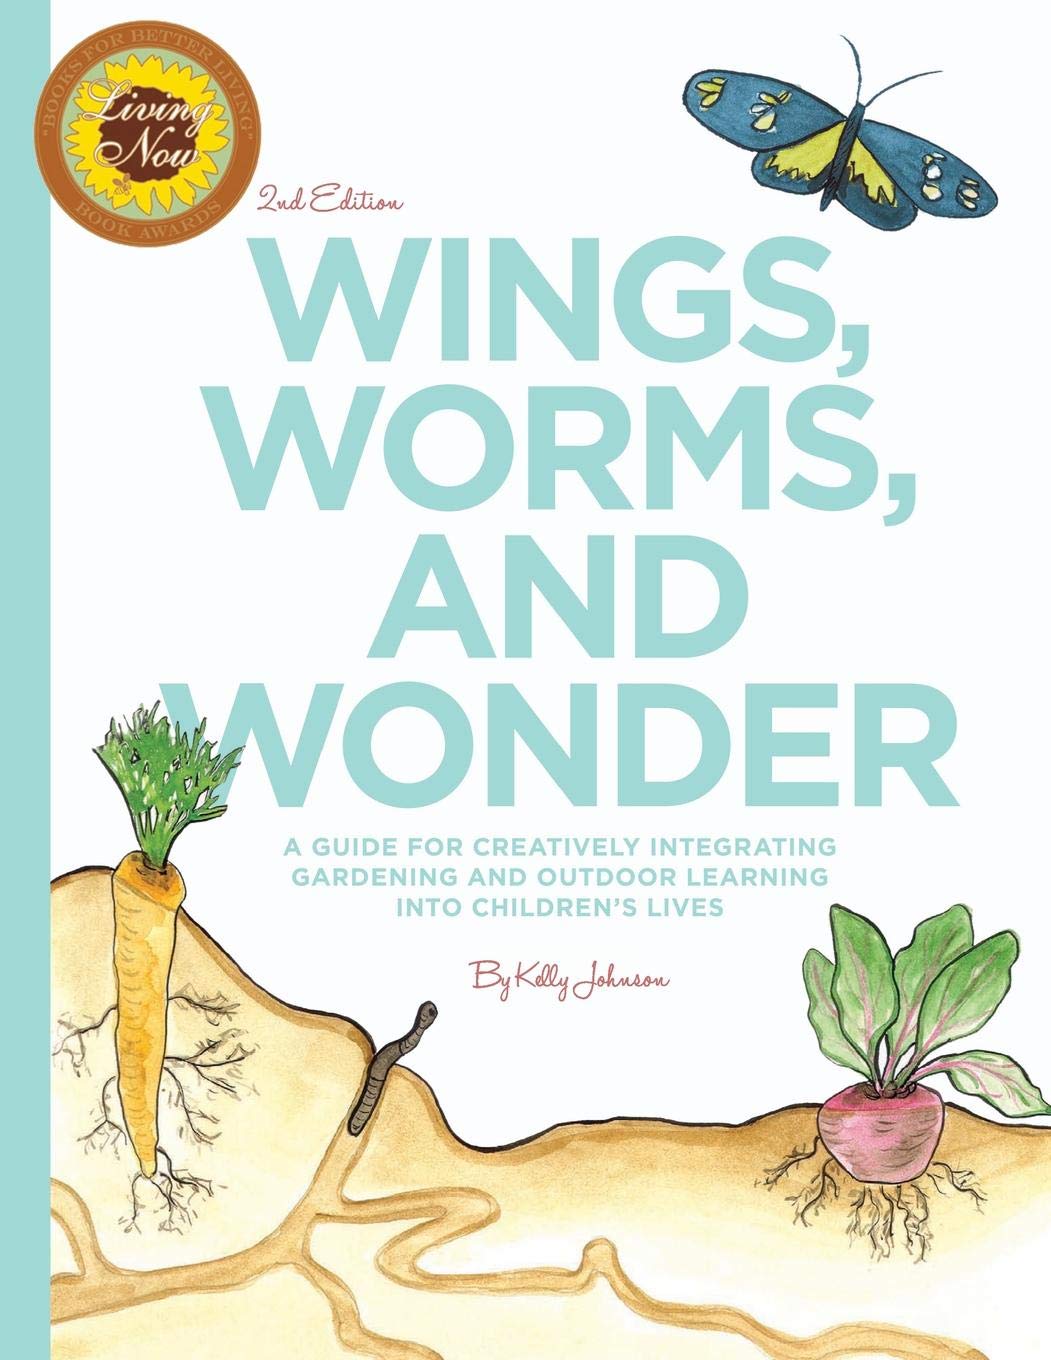 Wings Worms And Wonder - KibrisPDR